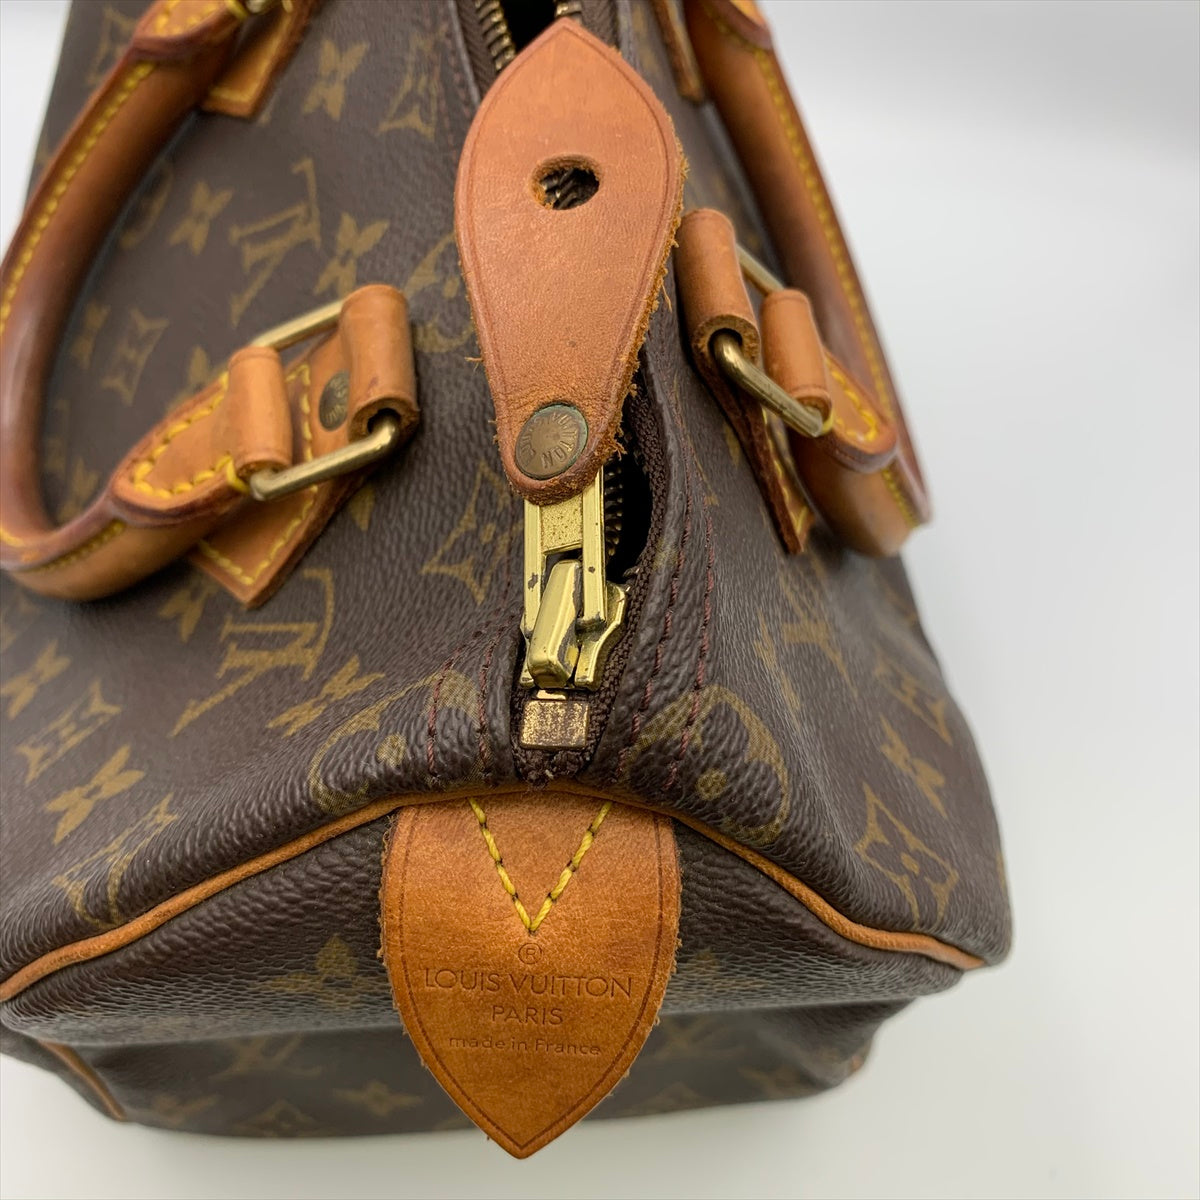 LOUIS VUITTON Handbag M41528 Speedy 25 Monogram canvas Brown Women